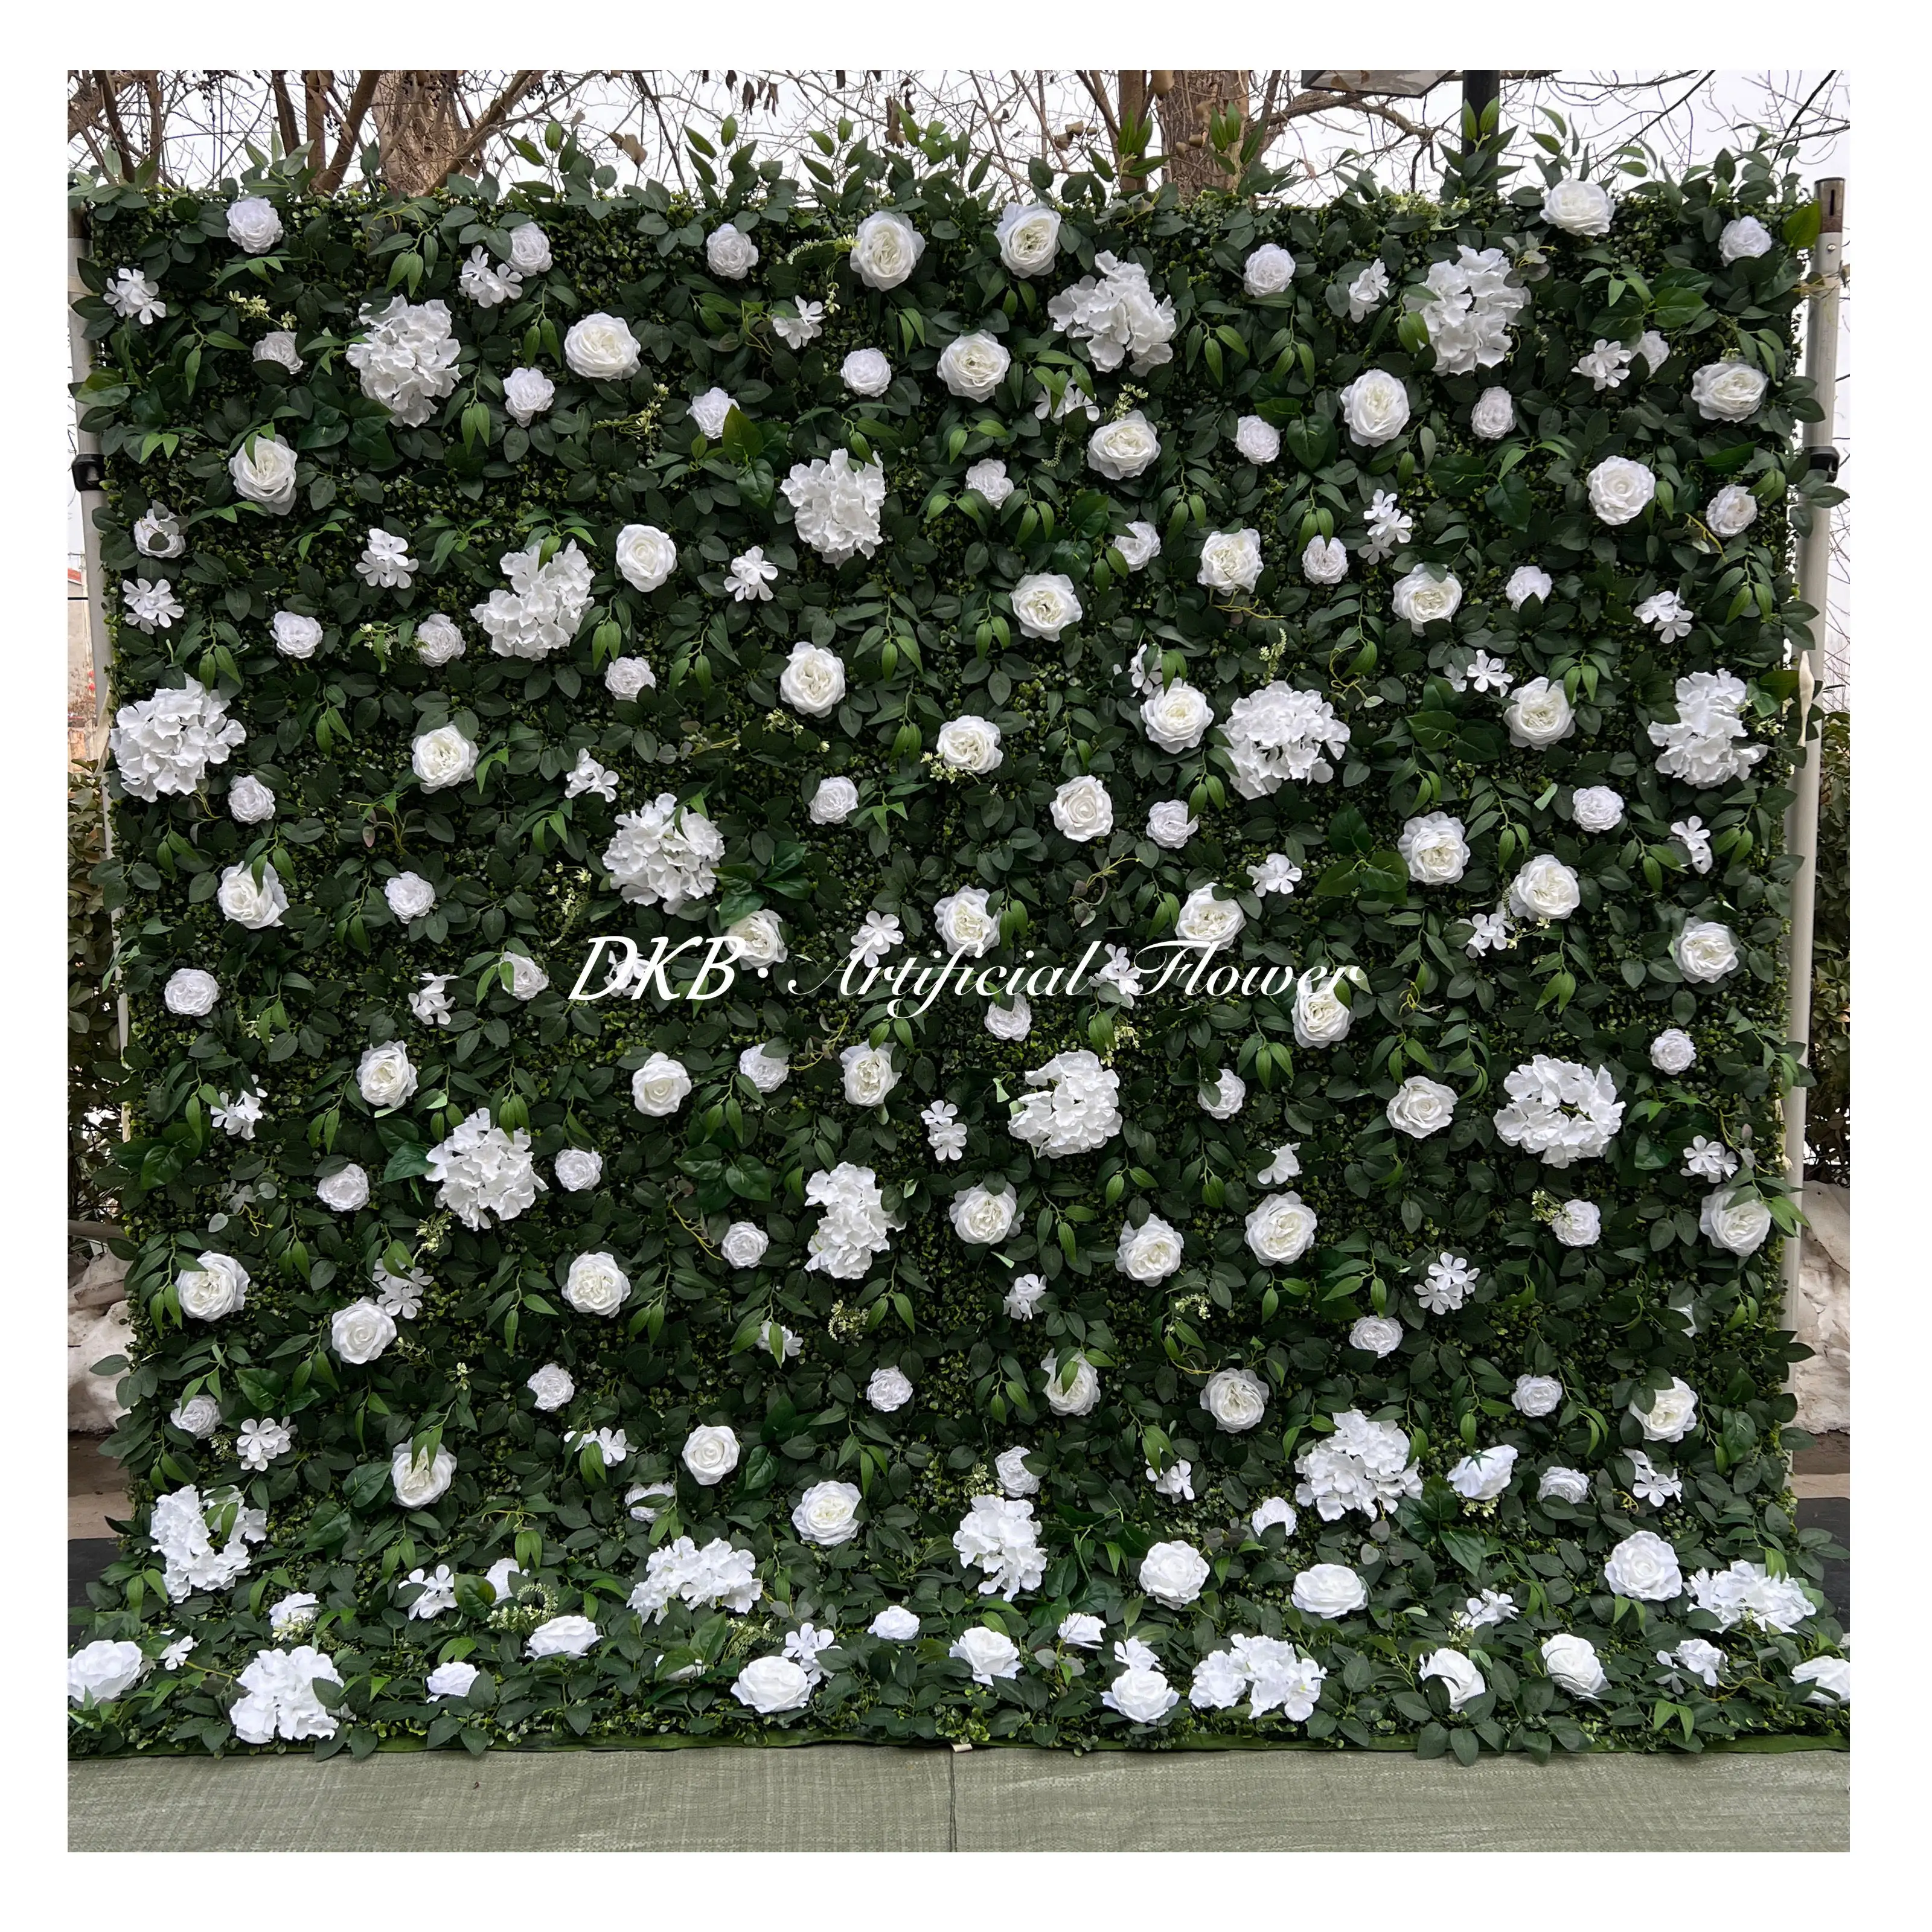 DKB 공장 저렴한 인공 녹색 꽃 벽 8x8ft 실크 꽃 벽 패널 웨딩 파티 장식